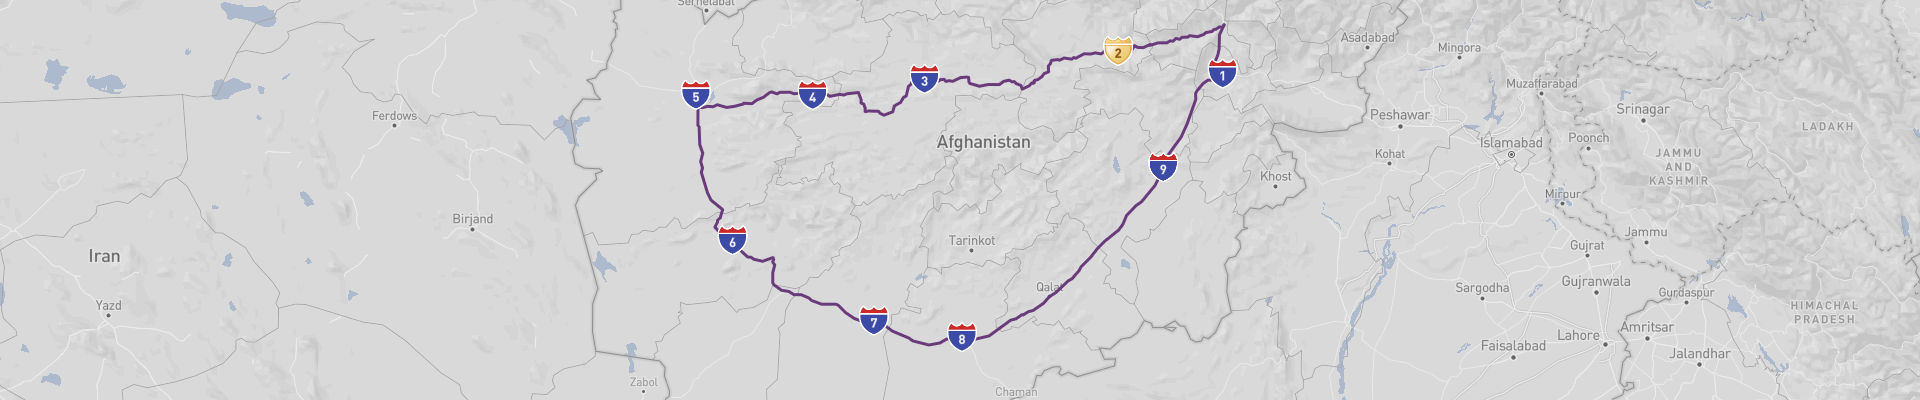 Itinéraire Afghanistan 